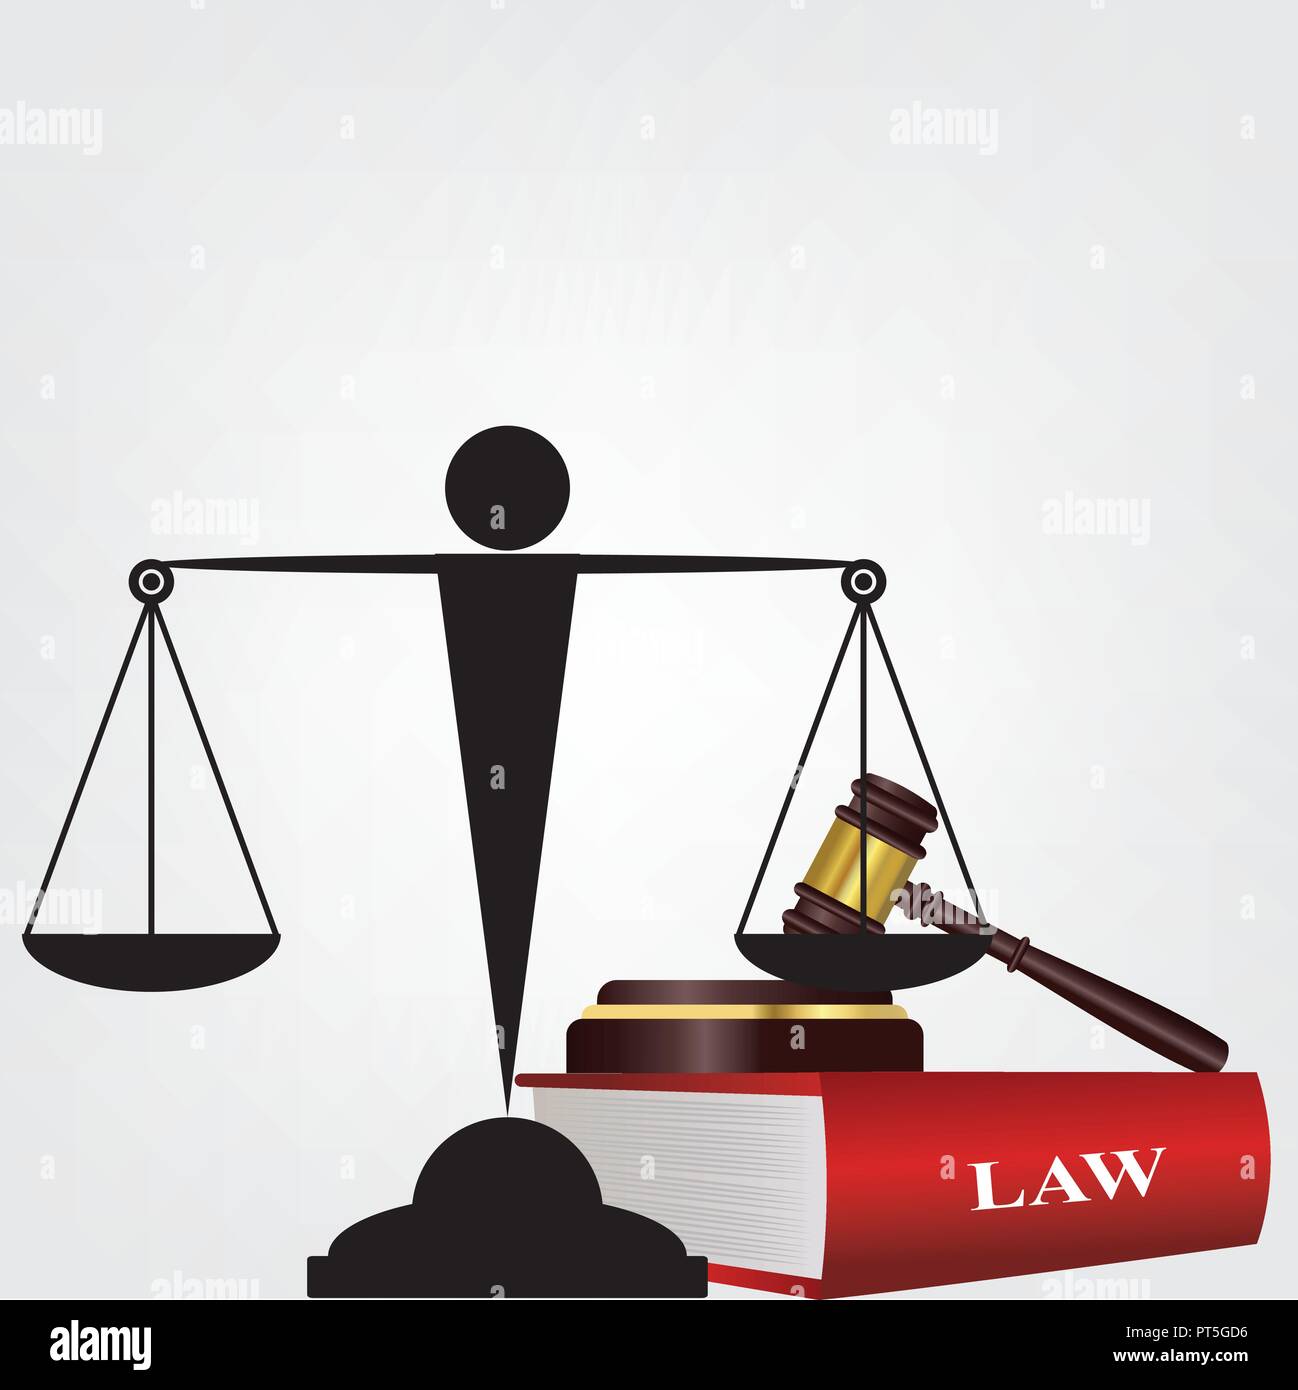 In diritto, una sentenza è una decisione di un tribunale per quanto riguarda i diritti e le passività delle parti in una azione legale o procedimento. Illustrazione Vettoriale